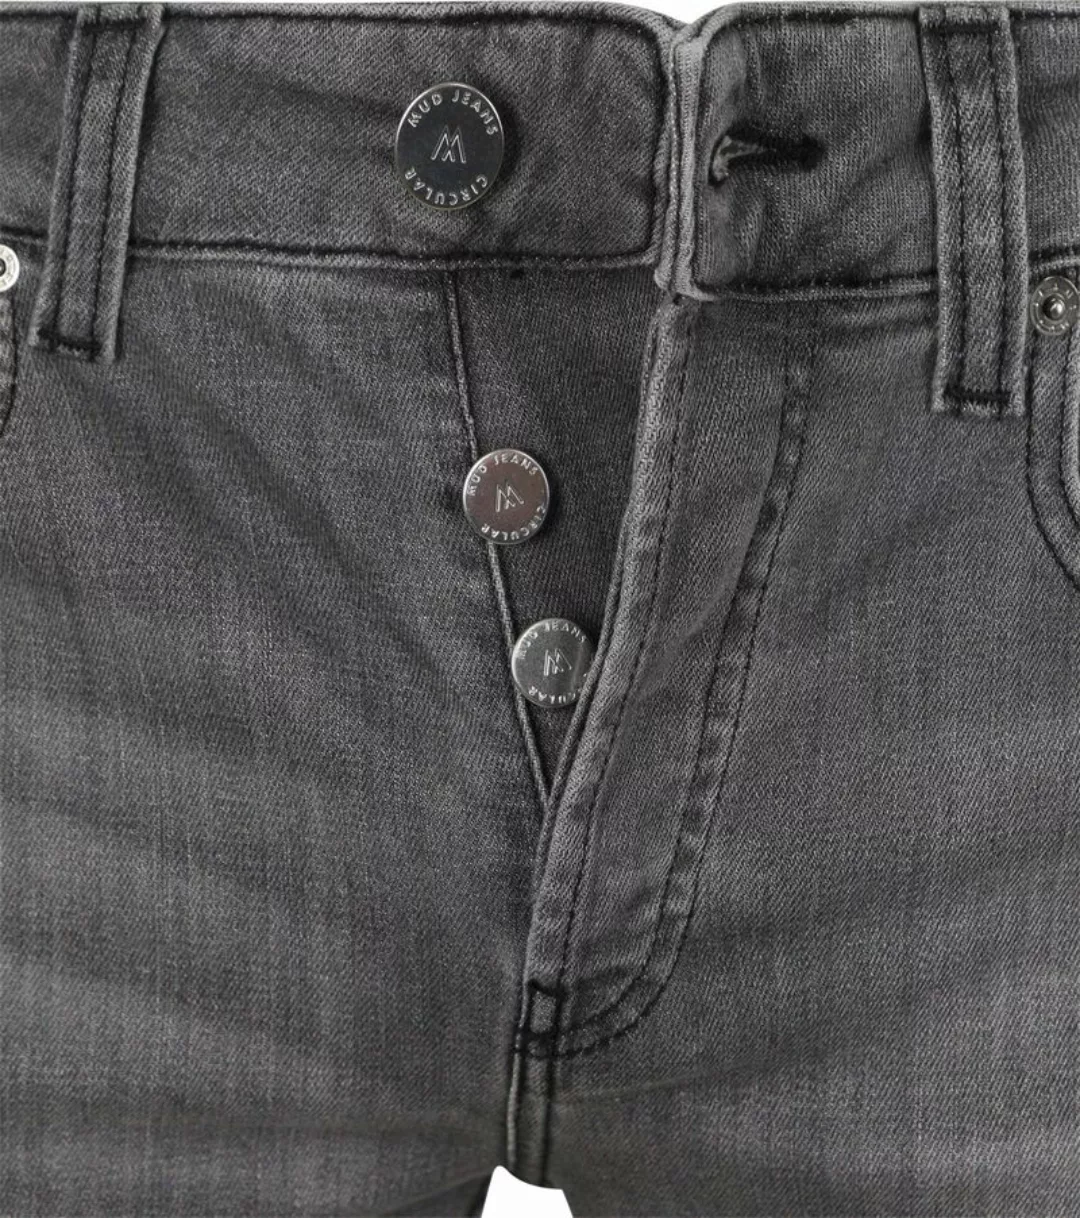 MUD Jeans Denim Slim-Fit Grau - Größe W 36 - L 32 günstig online kaufen